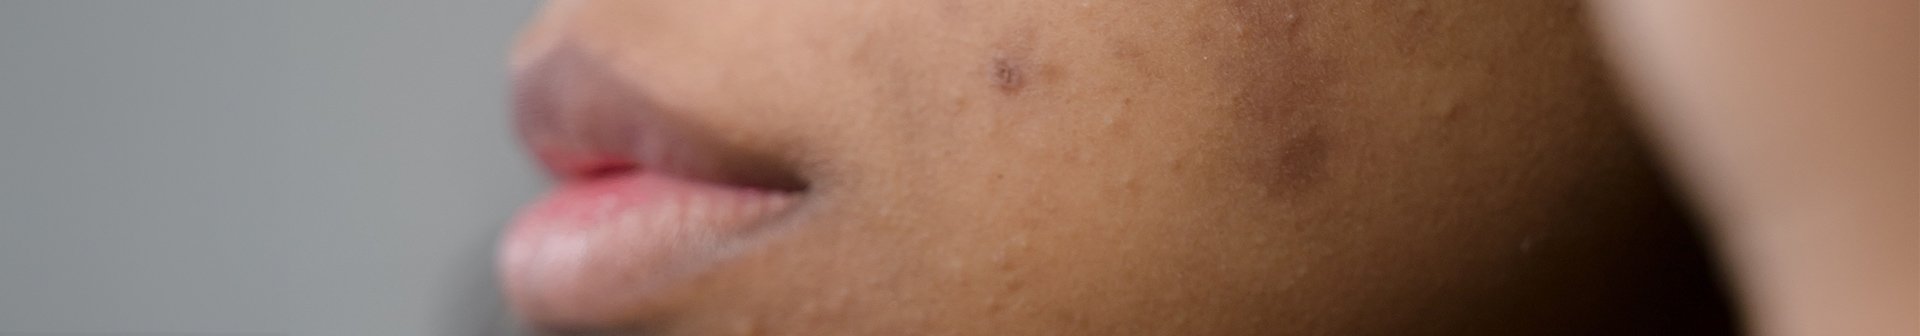 Ausschnitt eines Frauengesichts mit Melasma auf der unteren Wangenpartie